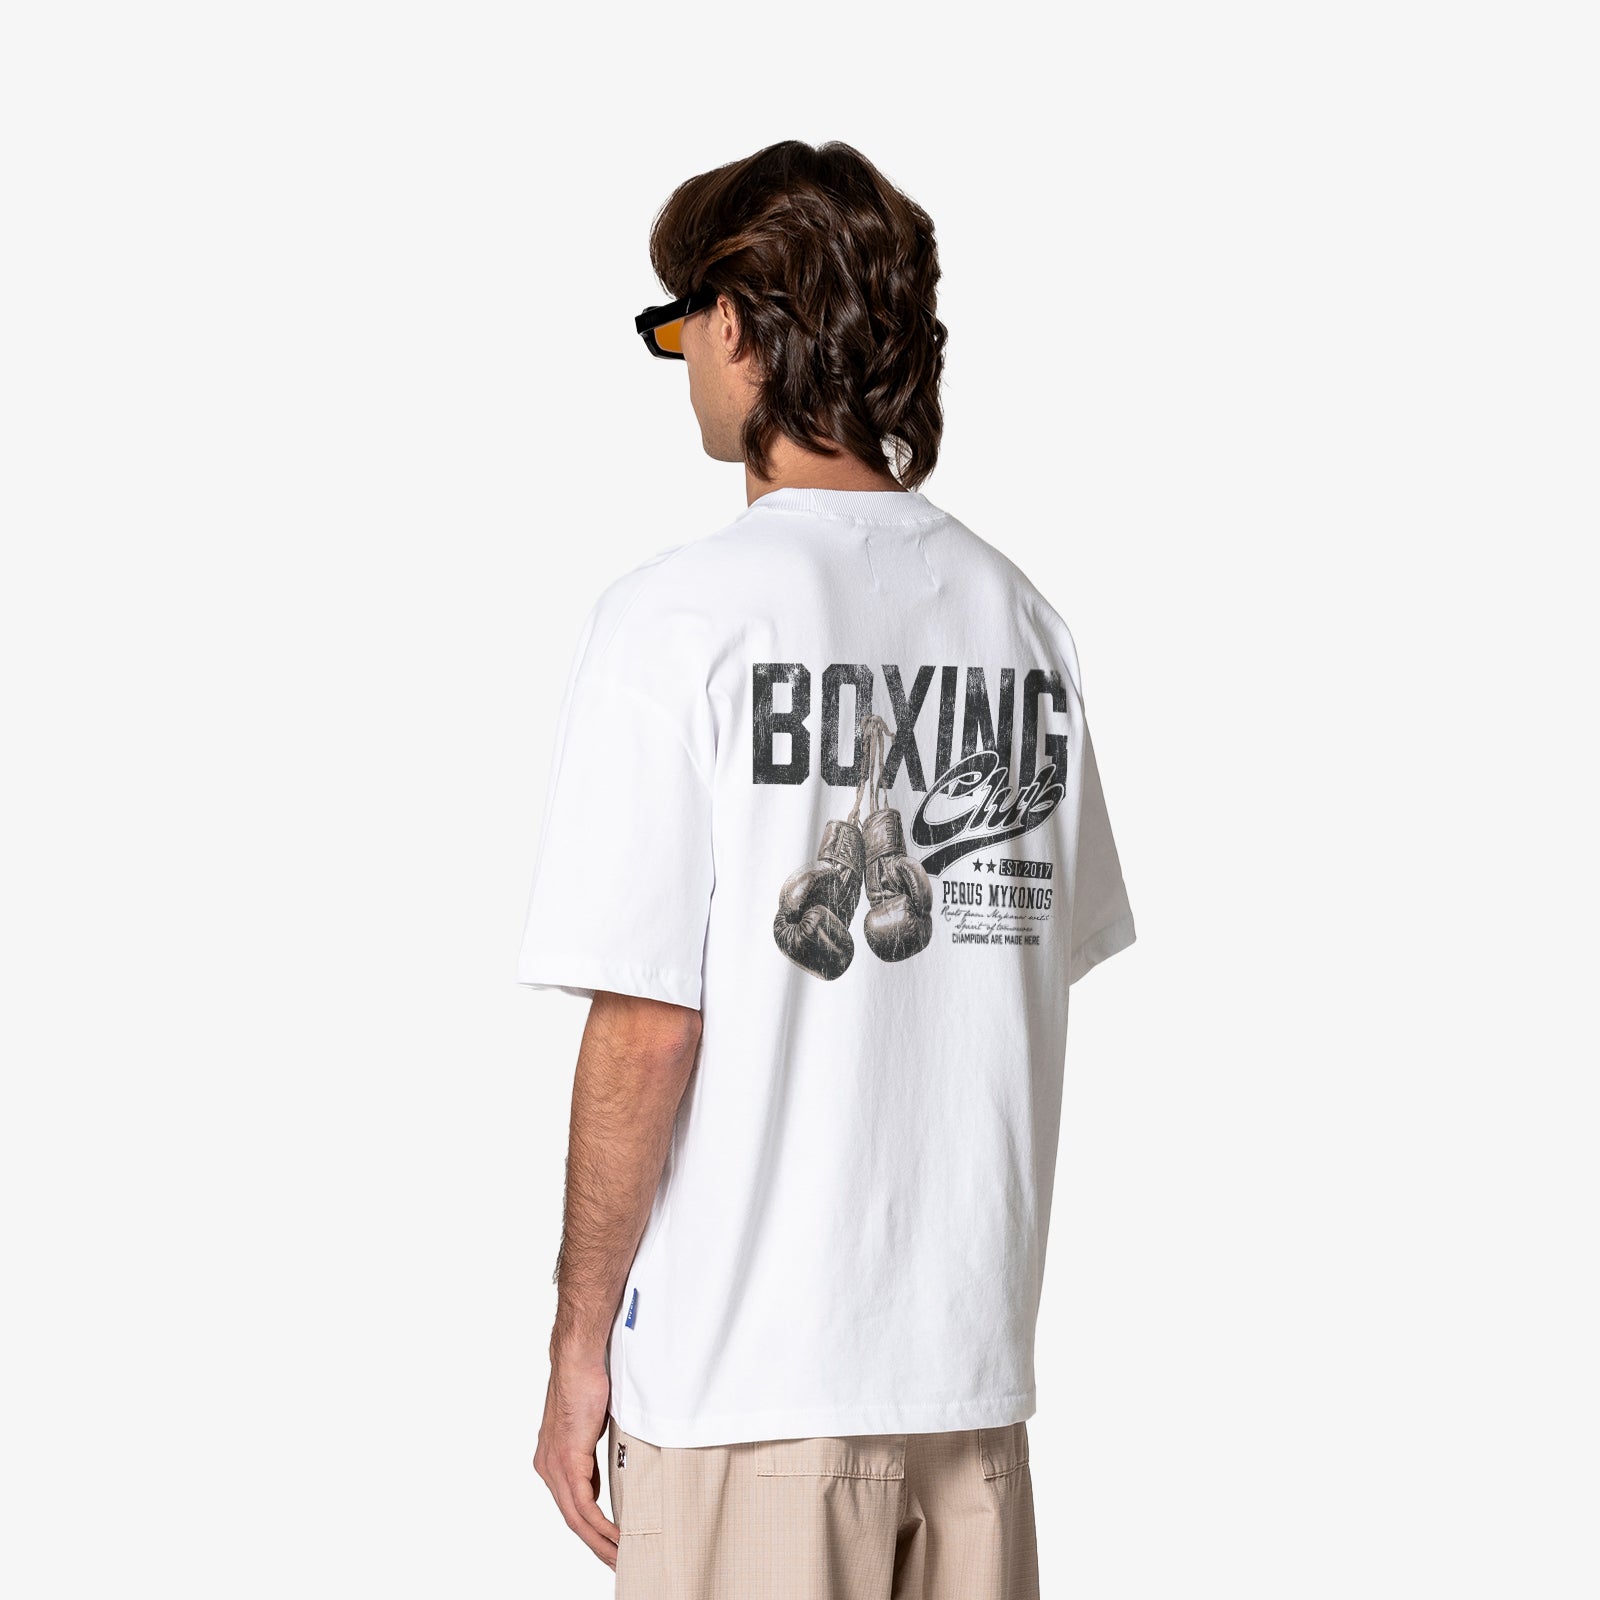 Boxing Club T-Shirt